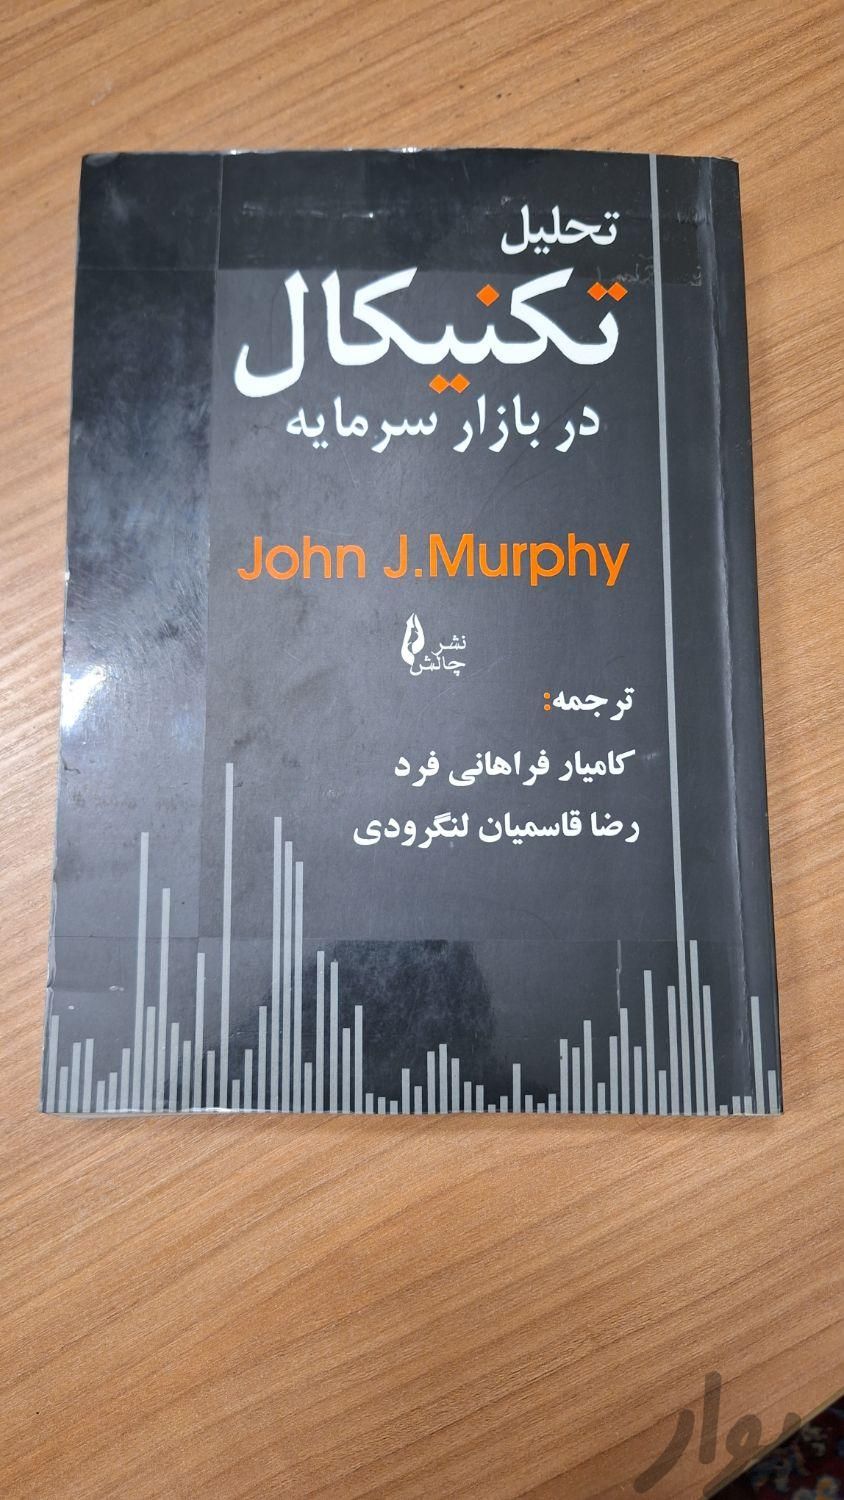 کتاب تحلیل تکنیکال در بازار سرمایه جان مورفی|کتاب و مجله آموزشی|تهران, ظهیرآباد|دیوار